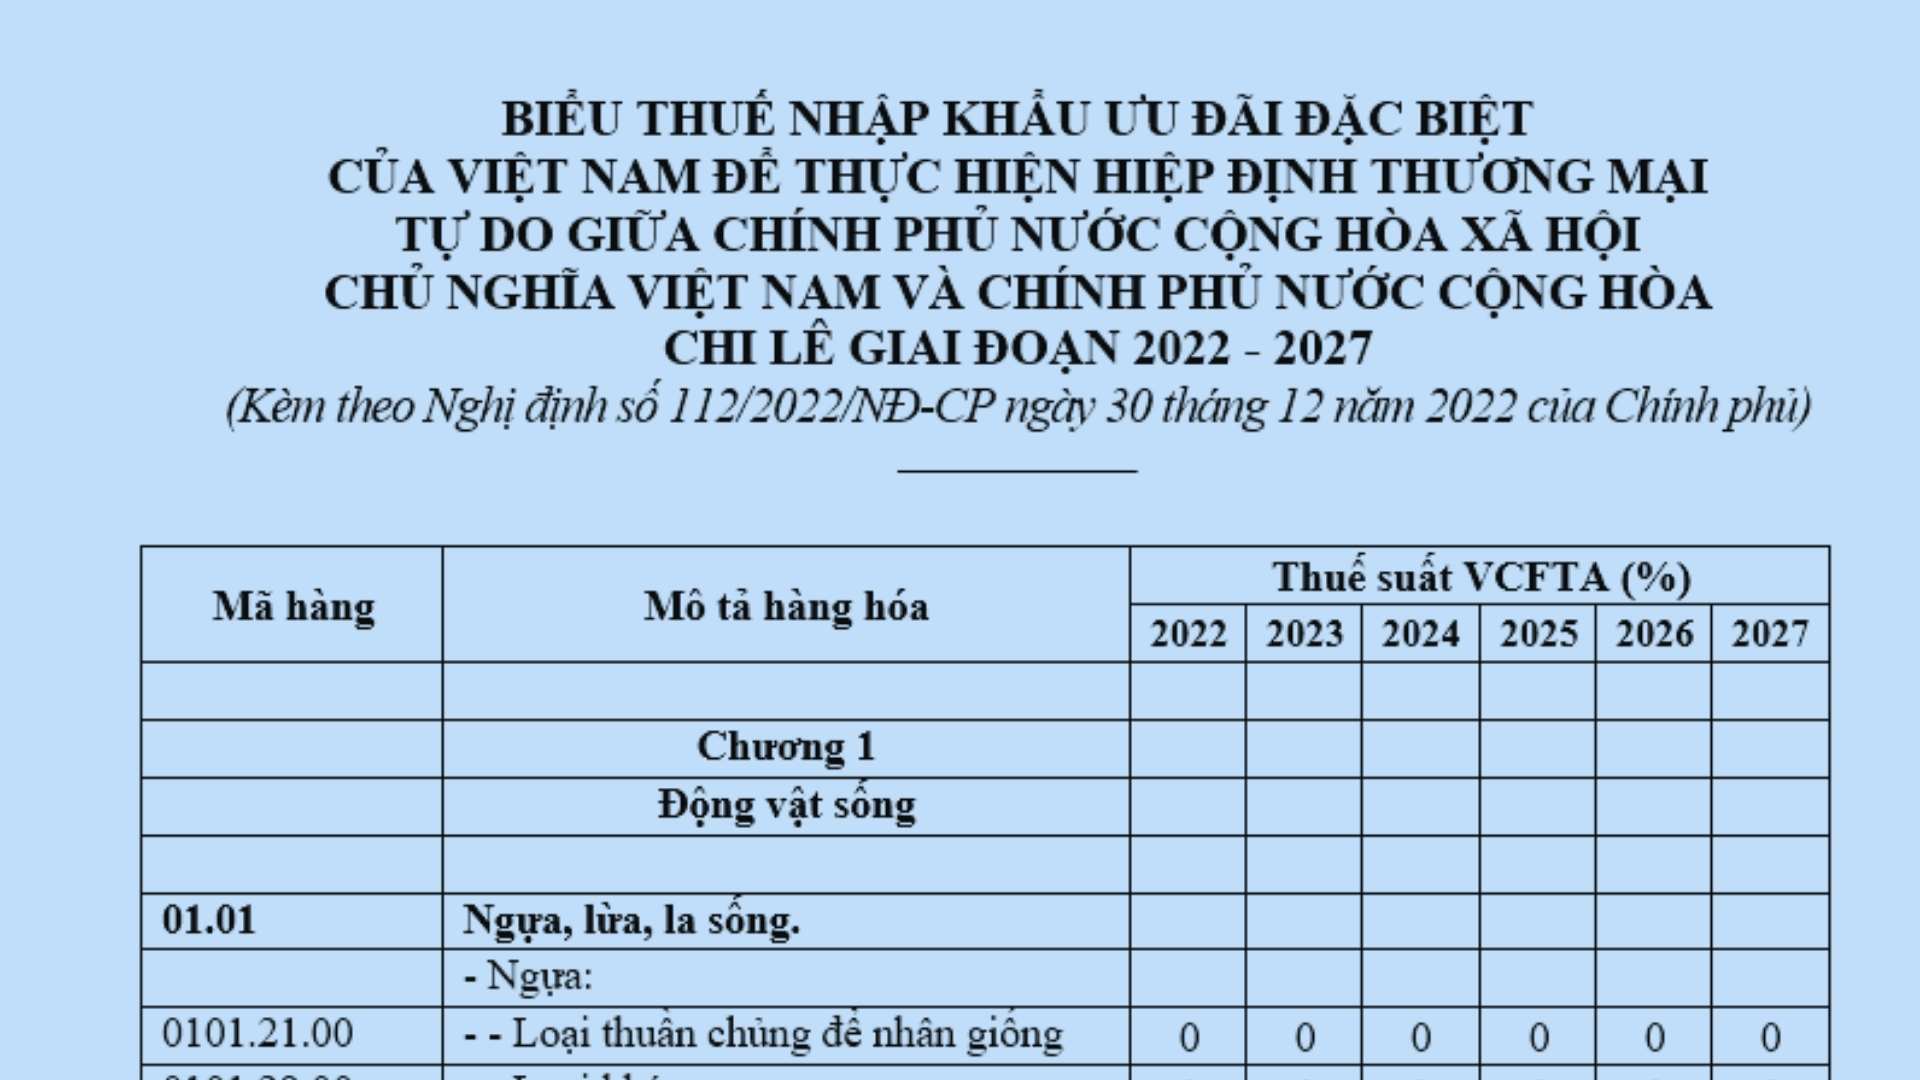 Biểu thuế nhập khẩu ưu đãi đặc biệt Việt Nam và Chi Lê